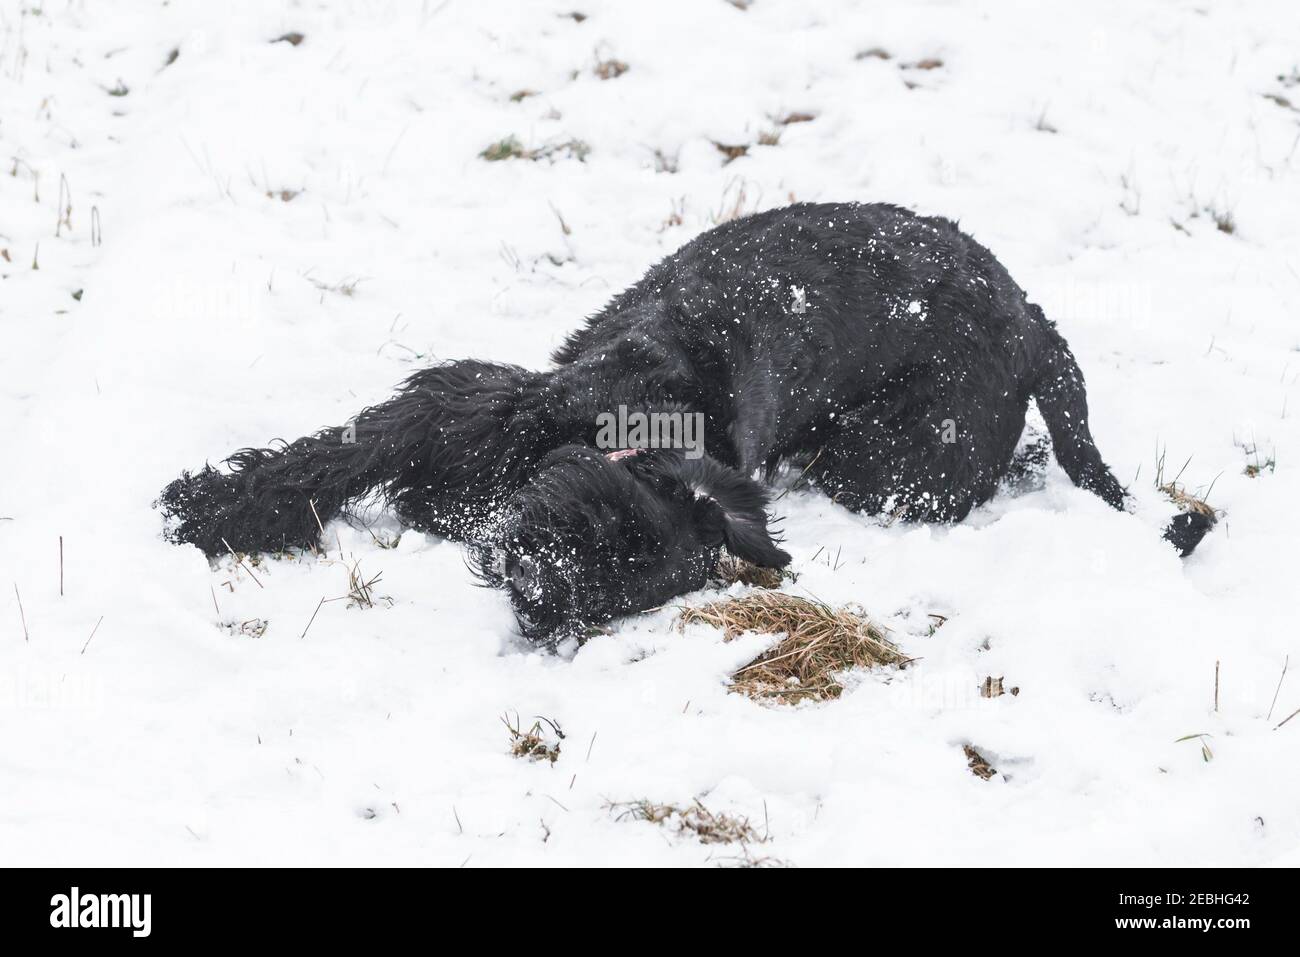 Chien géant schnauzer avec fourrure noire jouant et roulant dans la neige en hiver et par temps de brouillard, Allemagne Banque D'Images